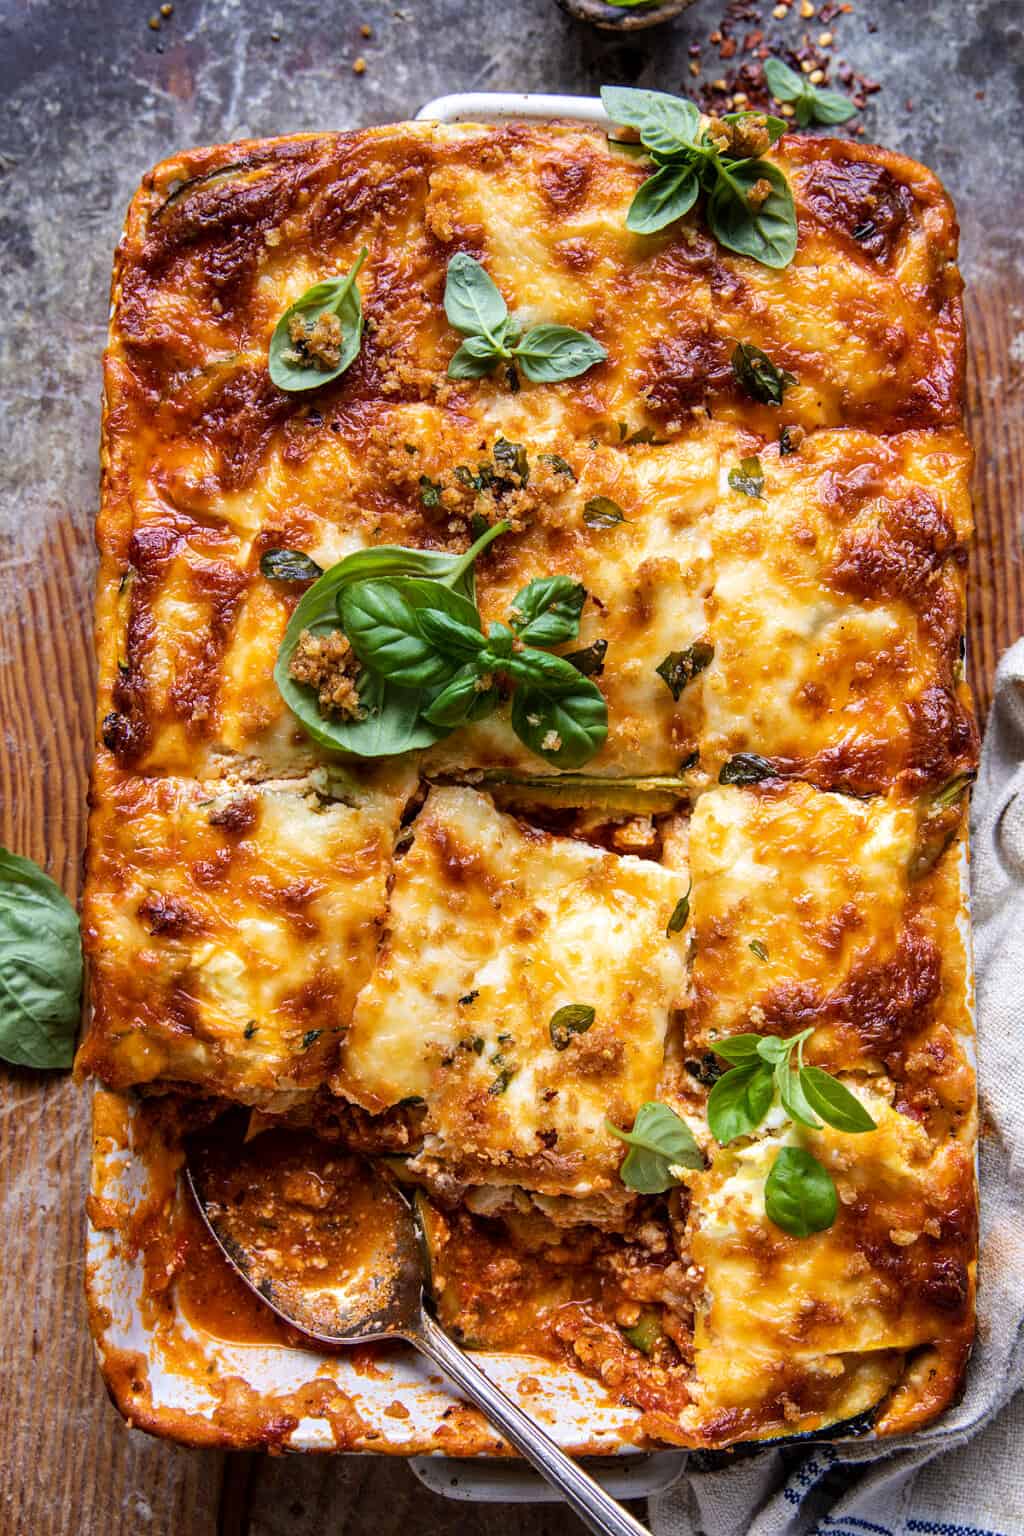 Spicy Zucchini Ricotta Lasagna with Oregano Breadcrumbs. - Yummy Recipe